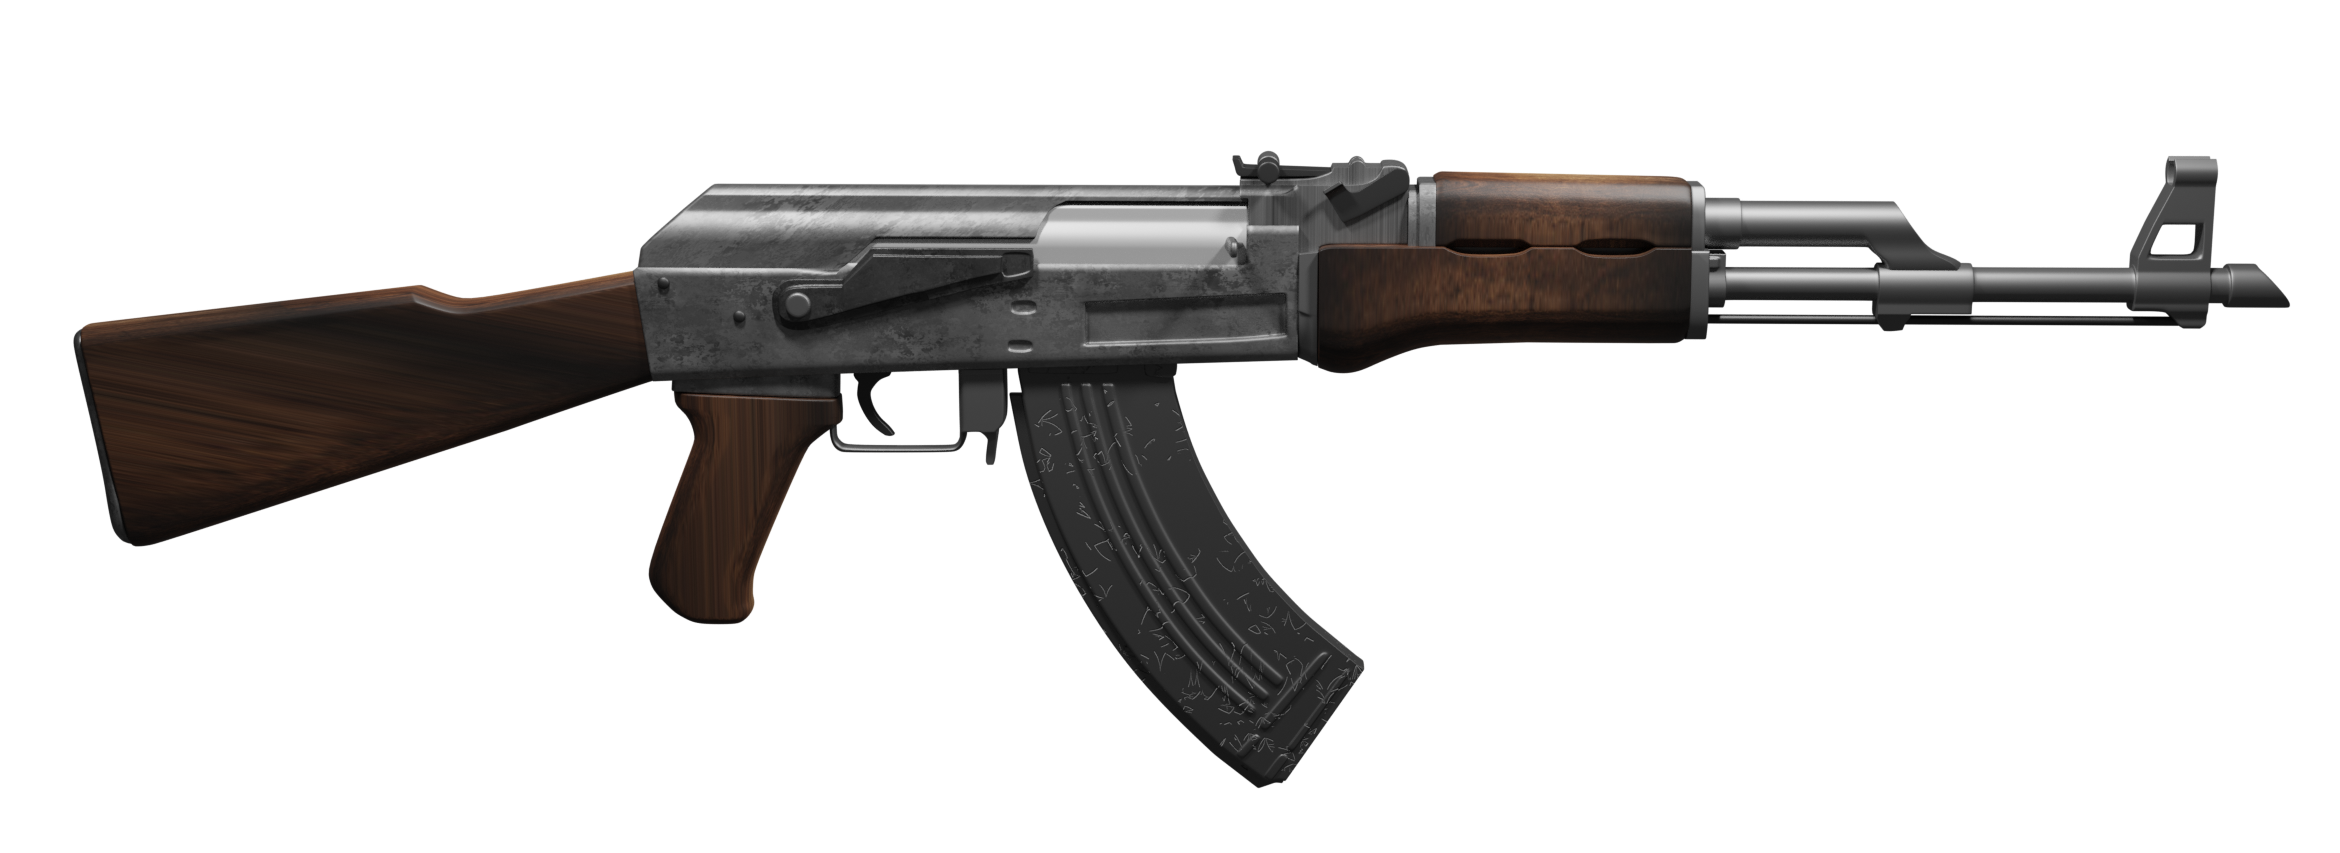 AK-47 Rifle preview image 1